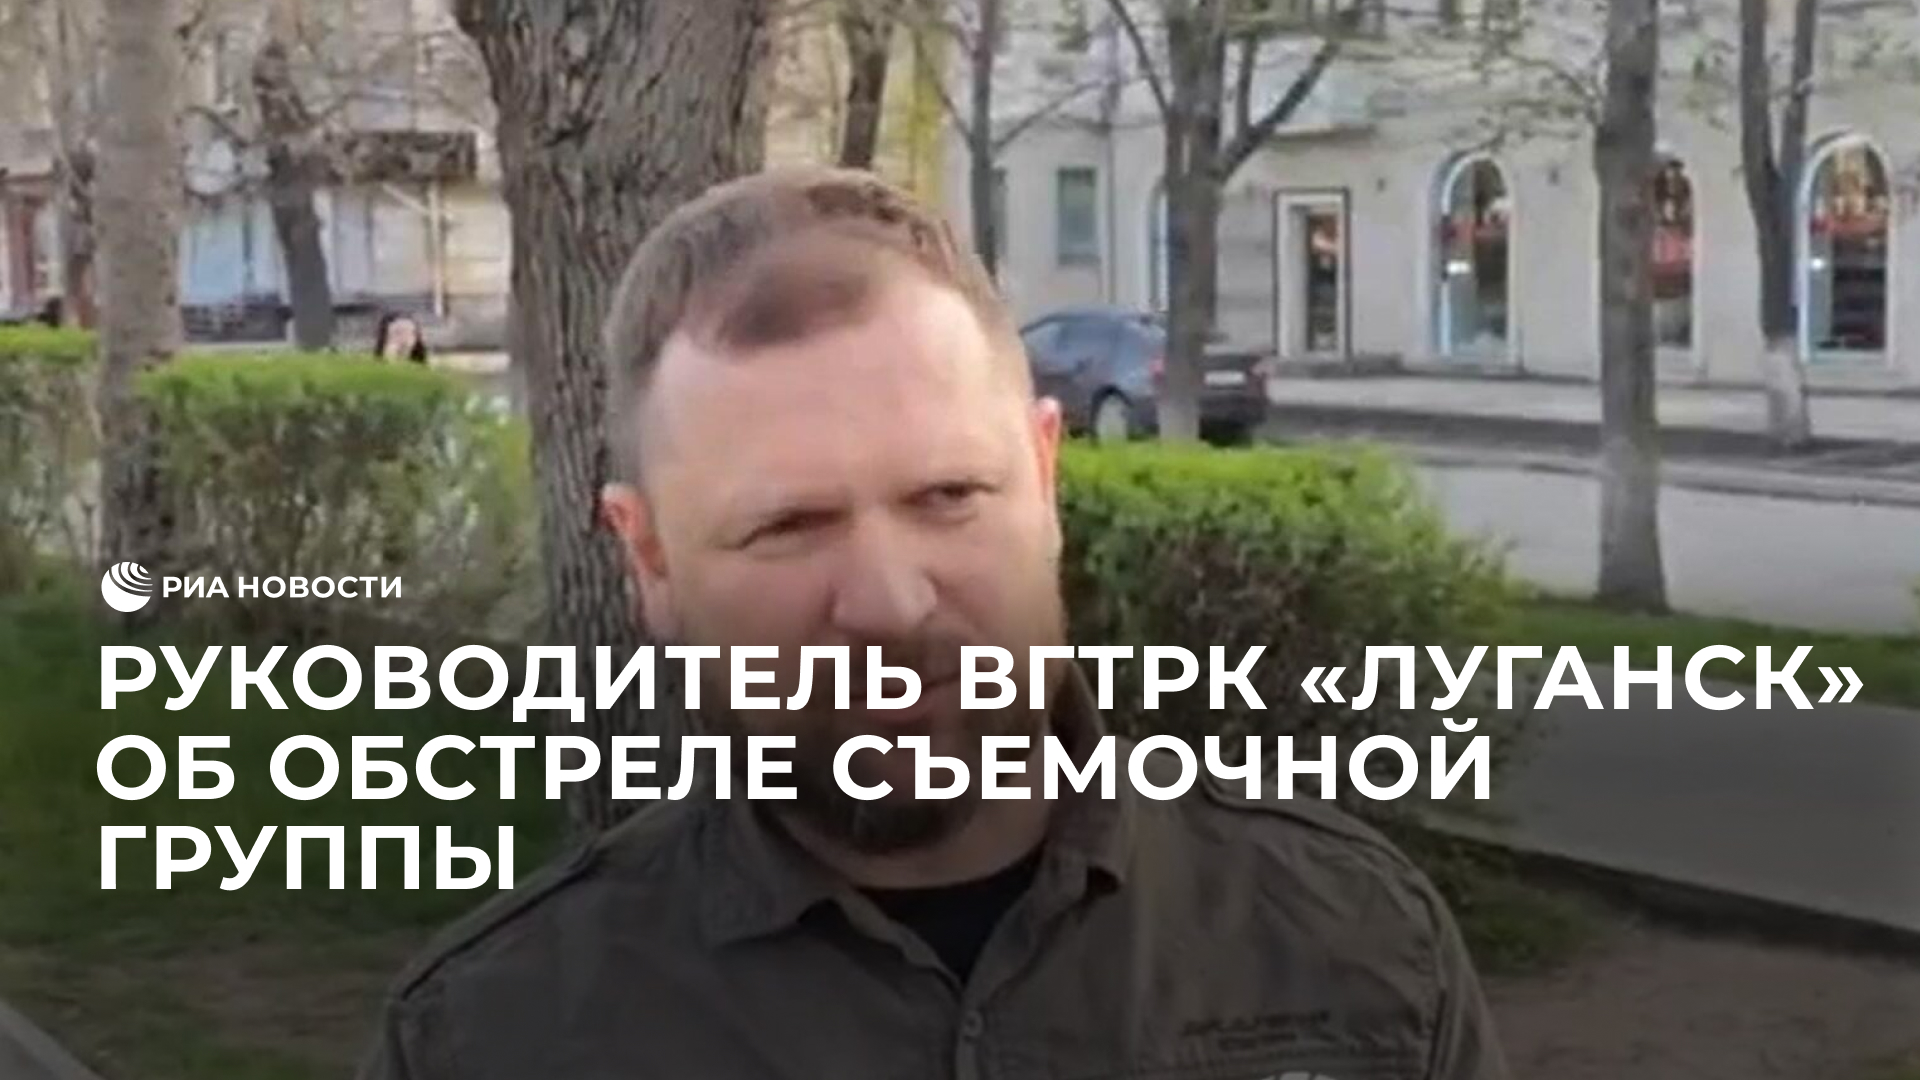 Руководитель ВГТРК "Луганск" об обстреле съемочной группы